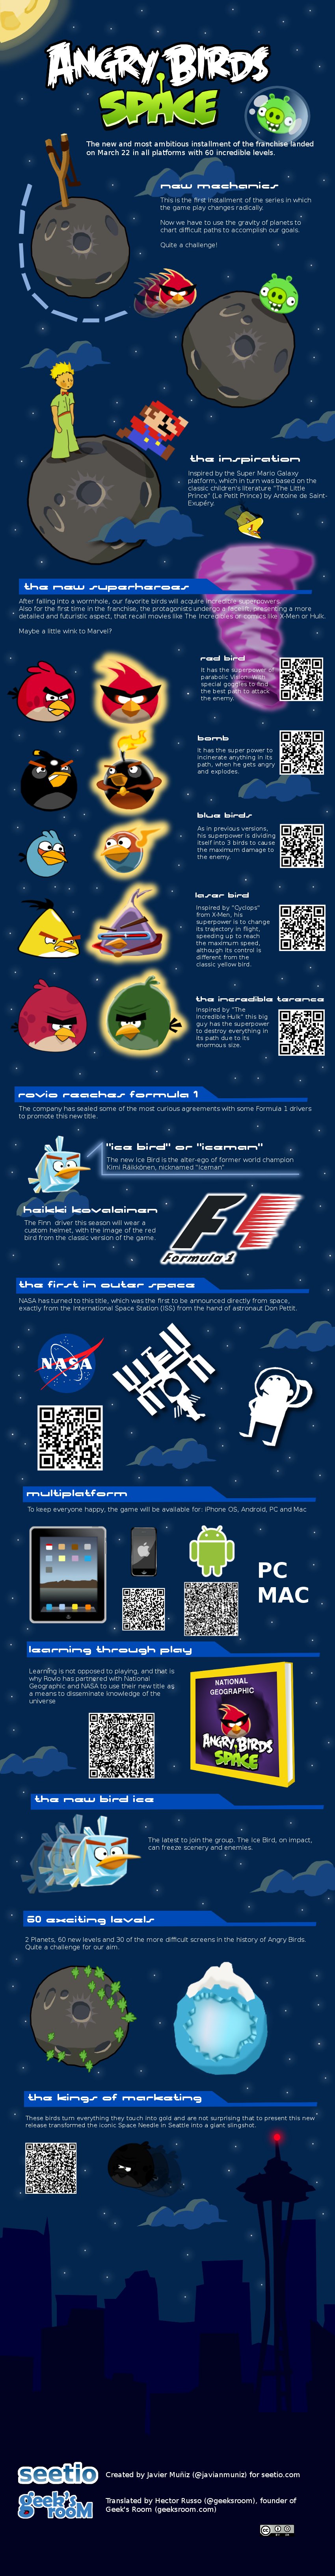 Angry Birds Space y sus curiosidades #Infografía en inglés 1